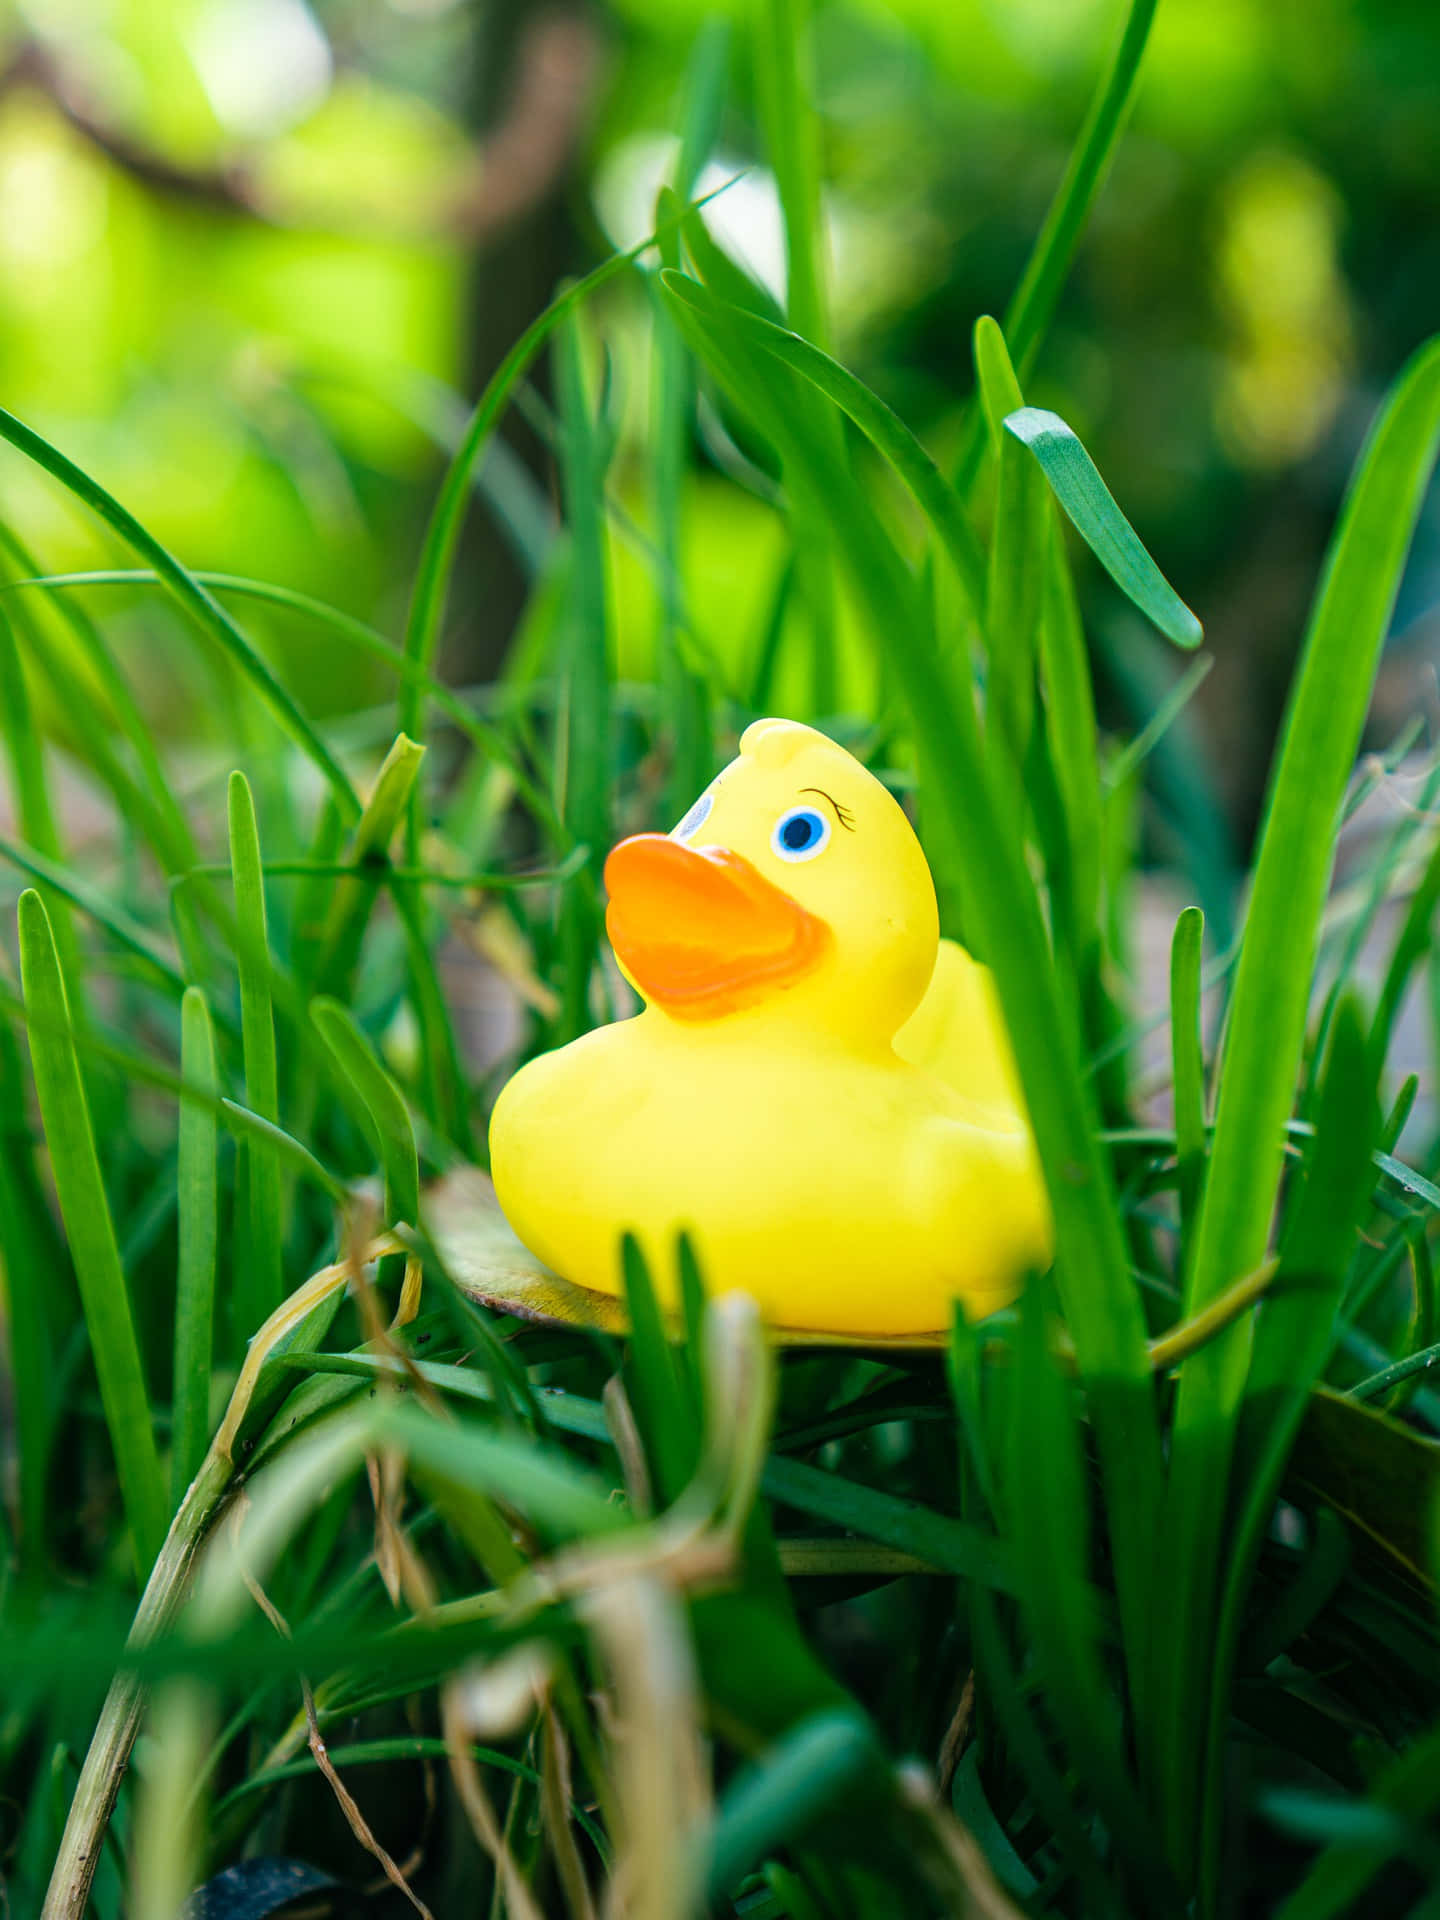 Rubber Duck In Green Grass.jpg Wallpaper